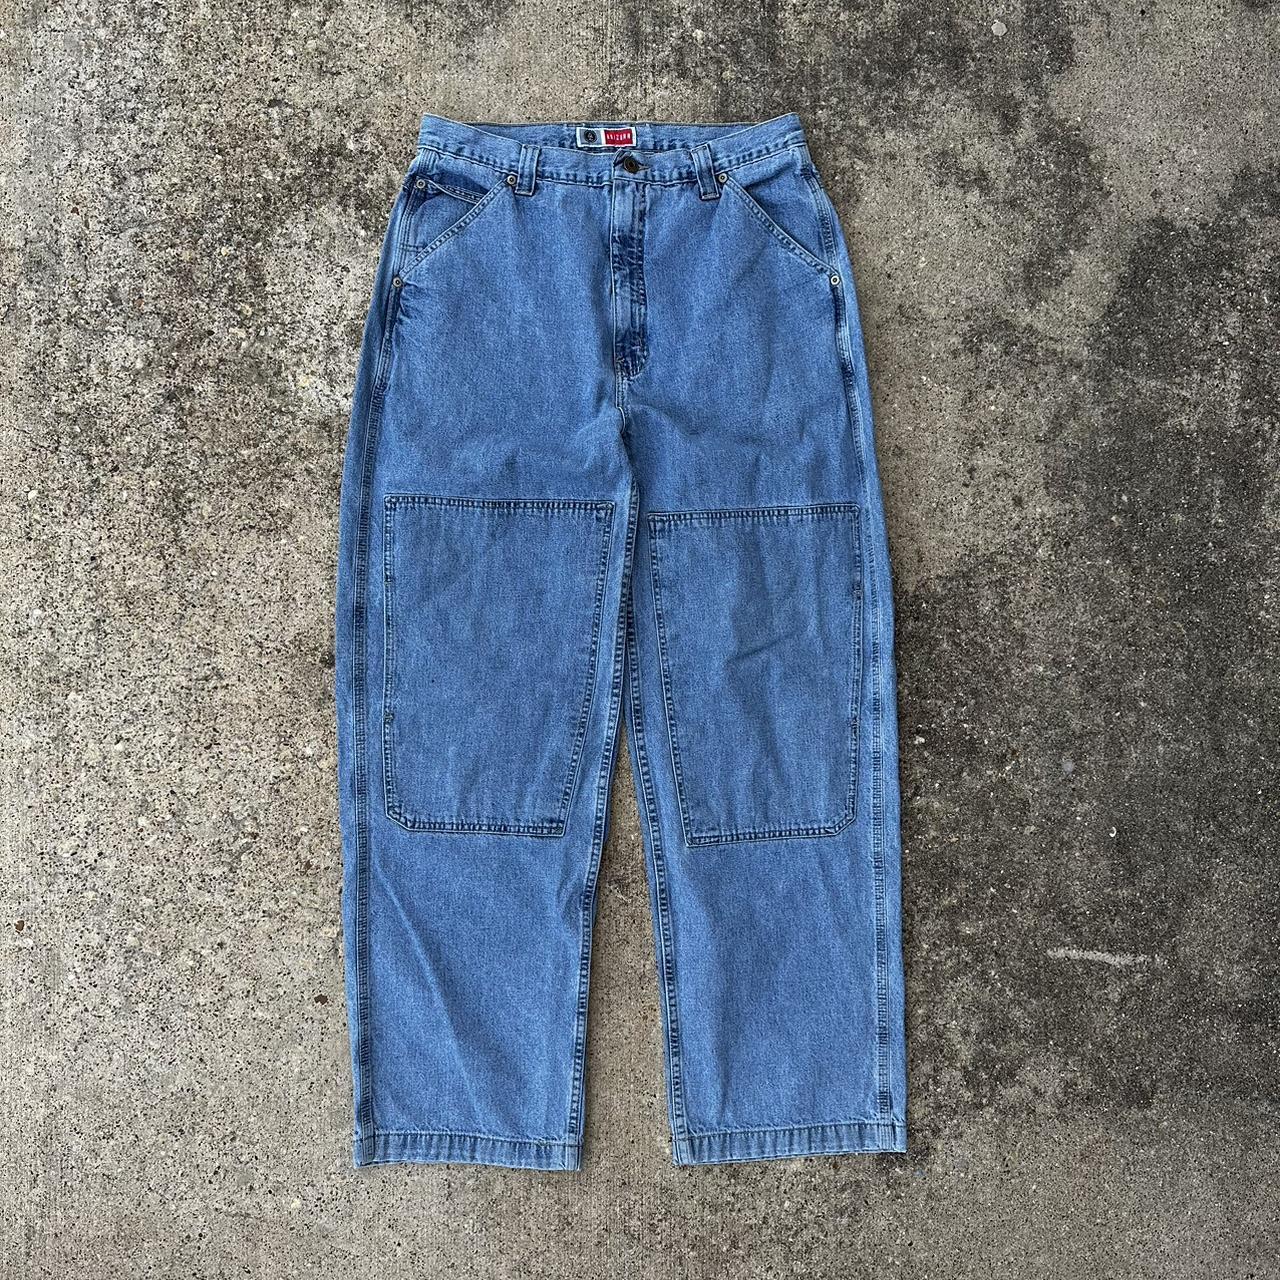 JNCO Men's Blue Jeans | Depop